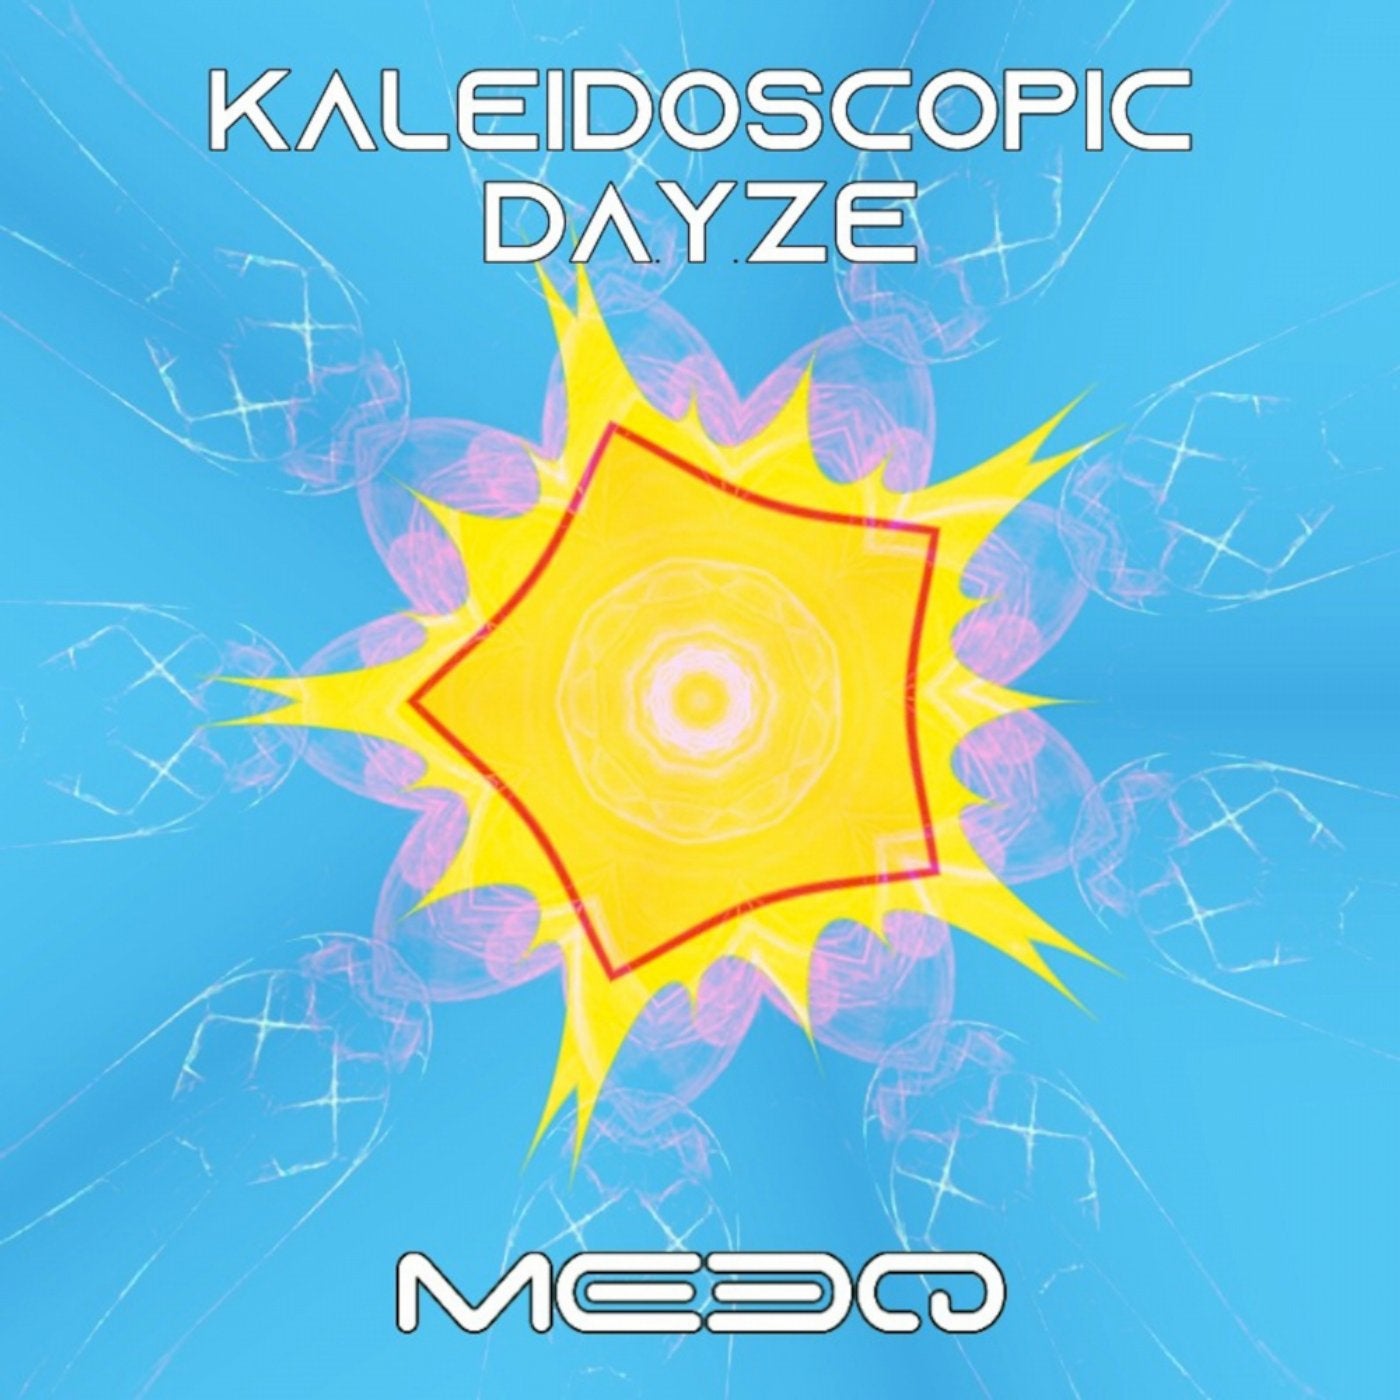 Kaleidoscopic Dayze